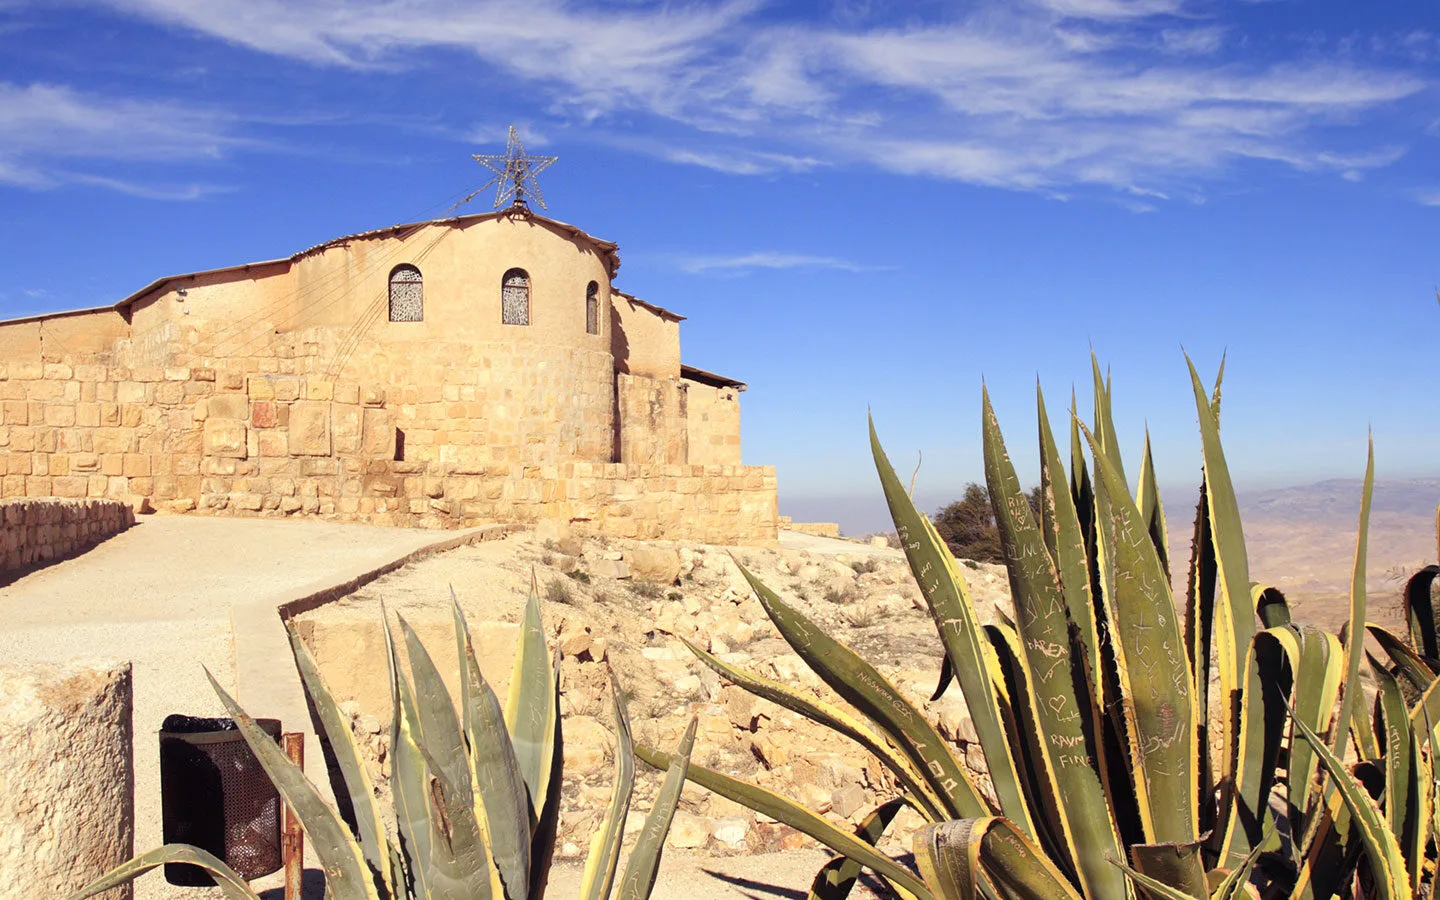 The Moses Memorial Church at Mount Nebo in Jordan